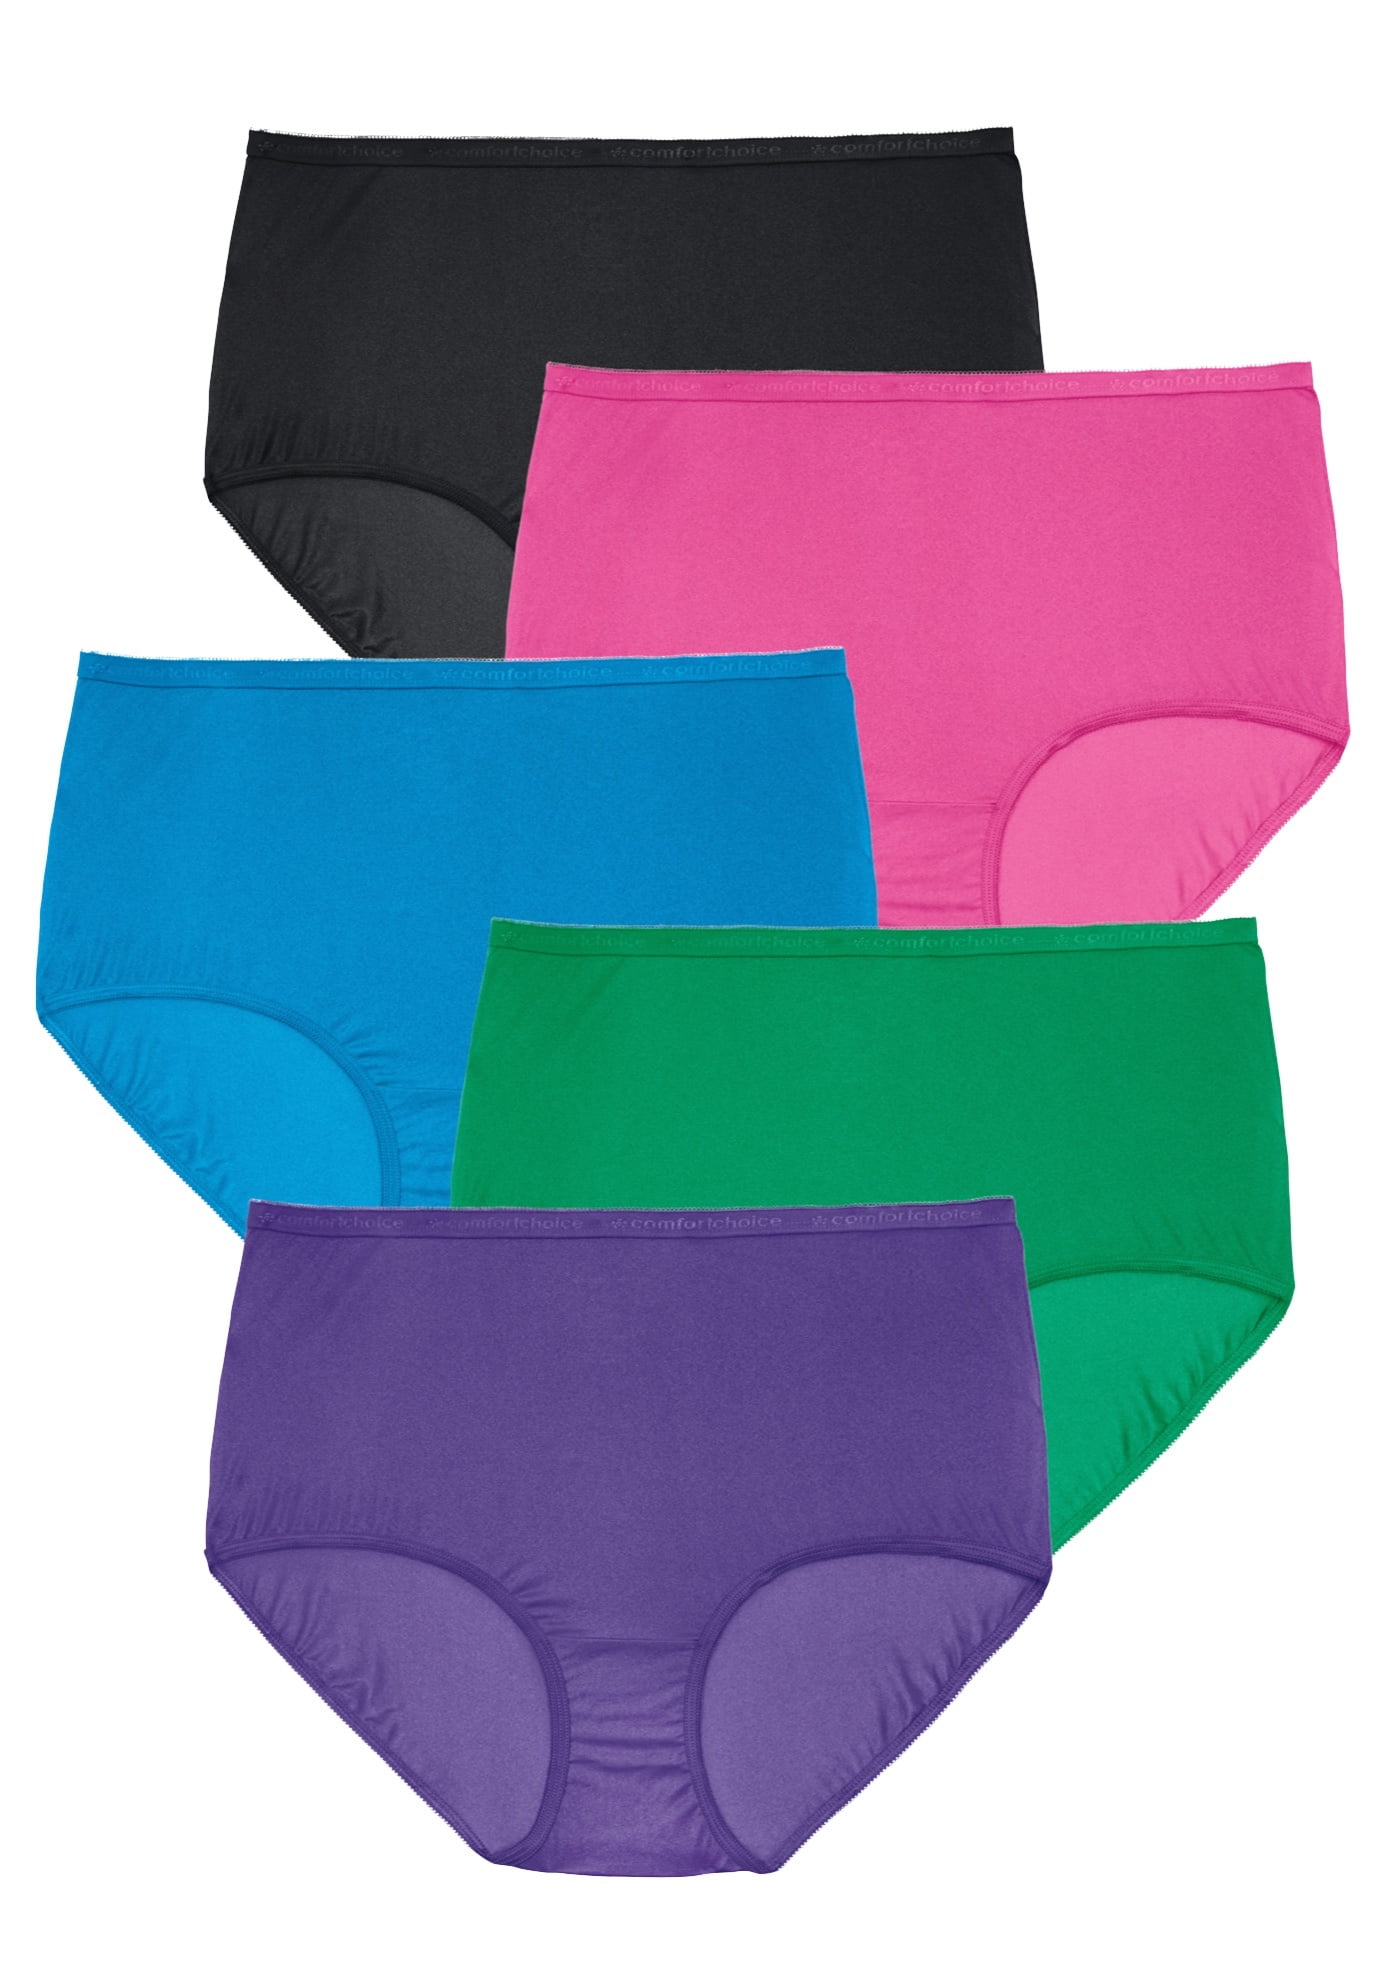 Comfort Choice Women's Plus Size Nylon Brief 5-Pack Underwear 